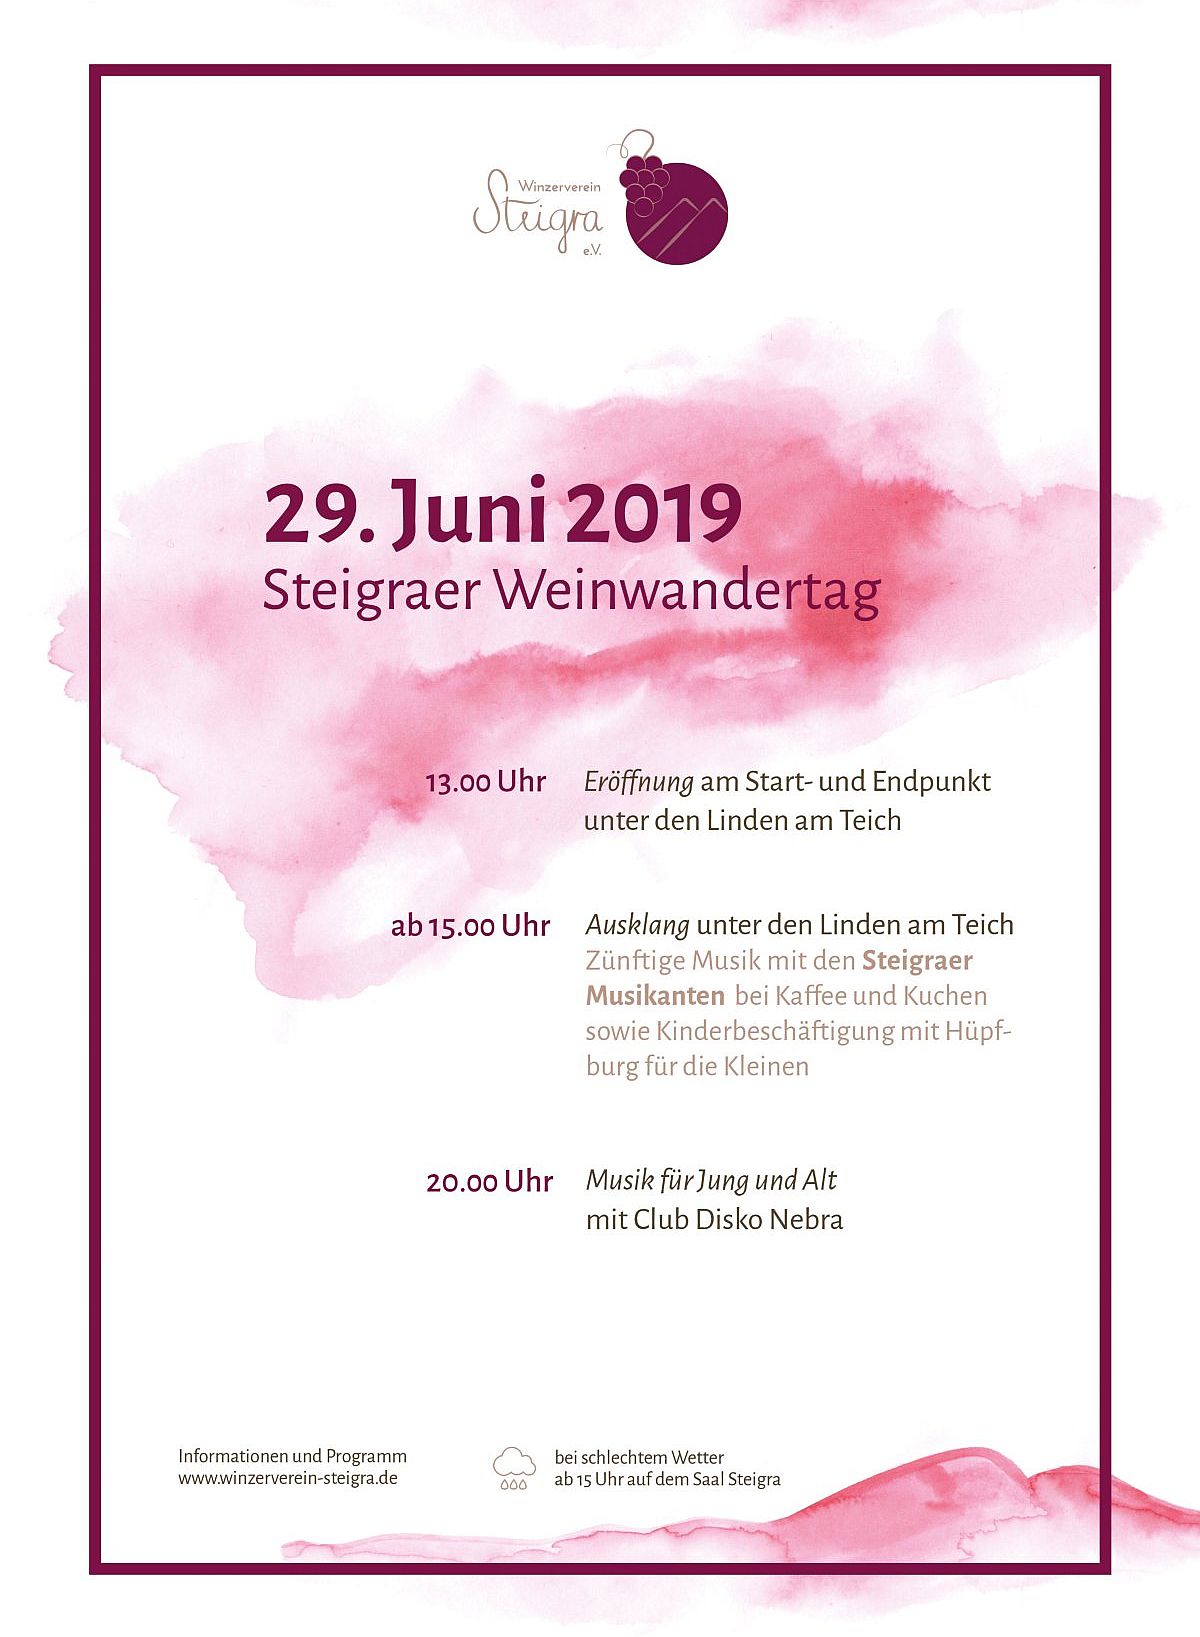 Die Weinwanderung in Steigra am 29. Juni 2019 - und zurück